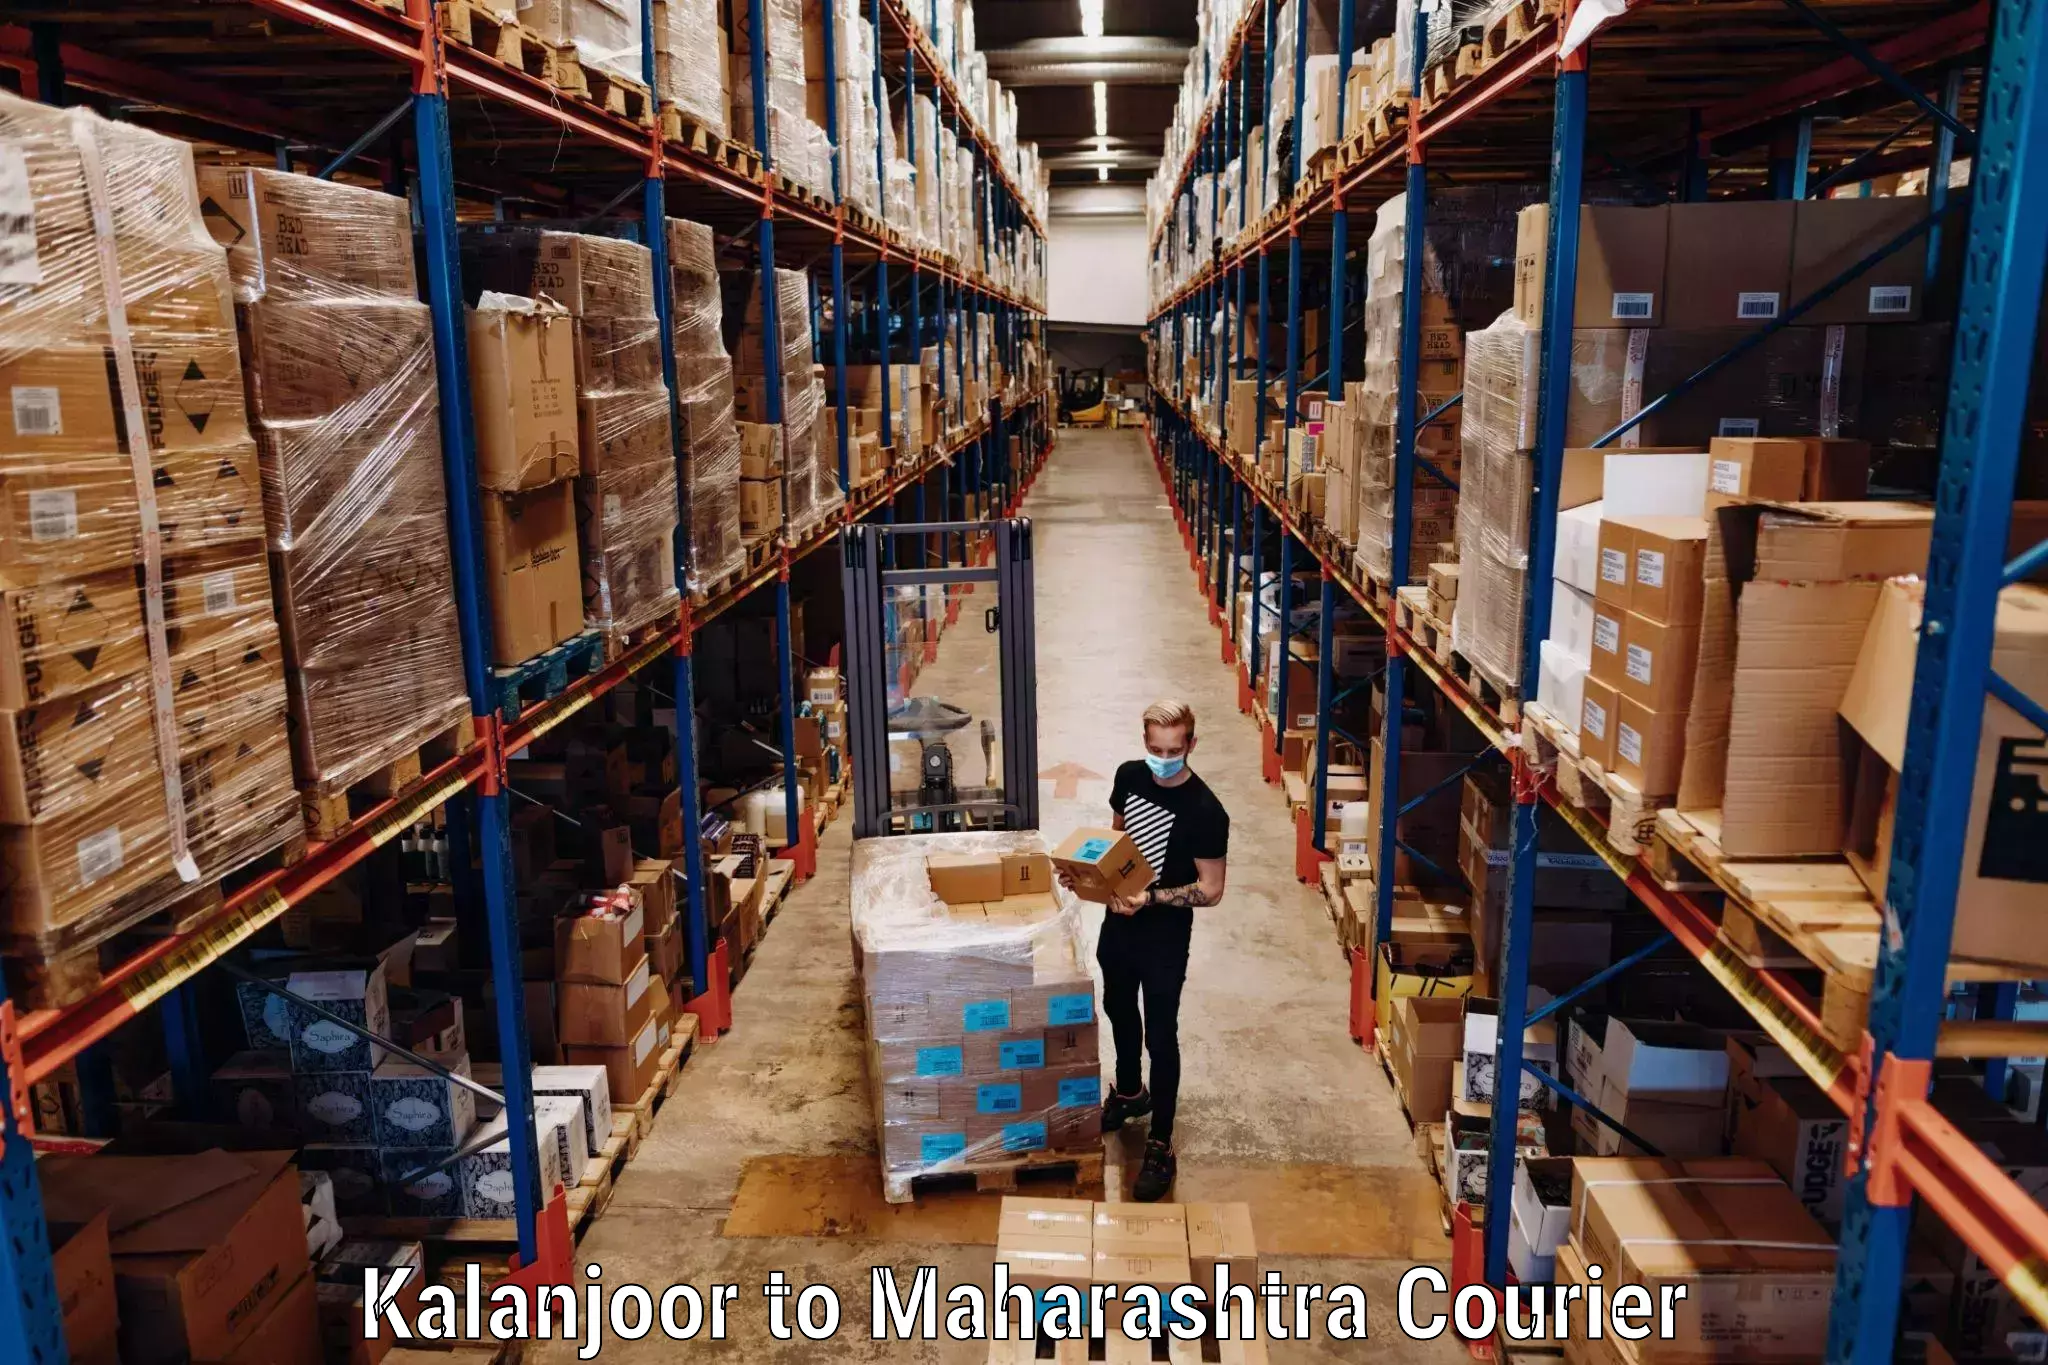 Luggage shipment tracking in Kalanjoor to Khamgaon